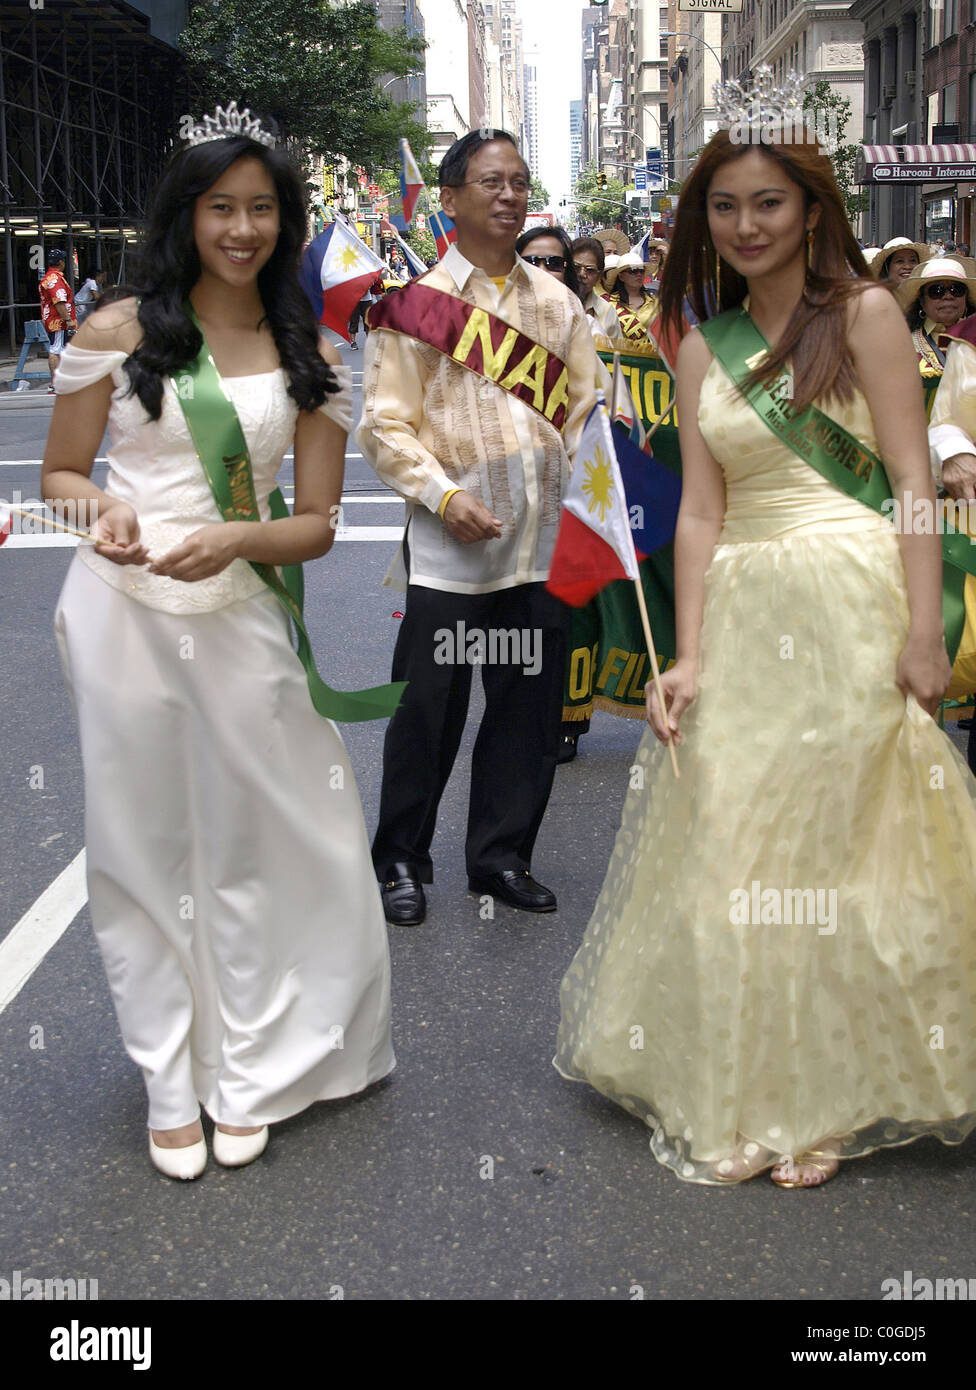 Atmosfera il centodecimo anniversario di indipendenza filippina parata del giorno su Madison Avenue a New York City, Stati Uniti d'America - 01.06.08 Tina Foto Stock